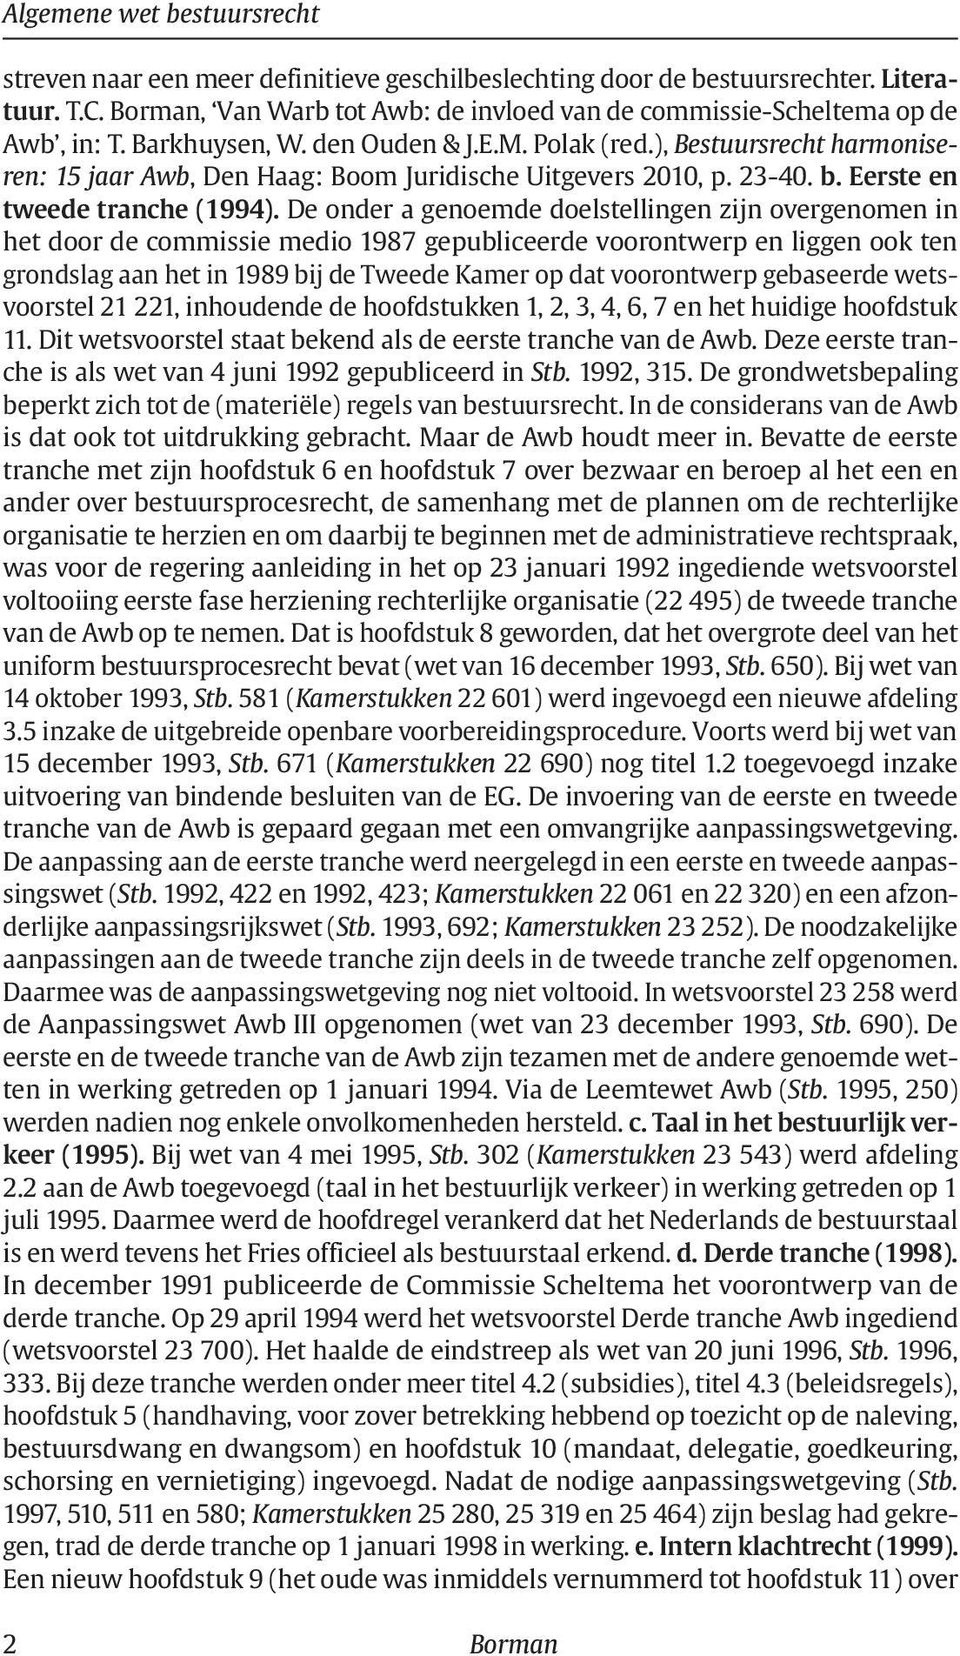 ), Bestuursrecht harmoniseren: 15 jaar Awb, Den Haag: Boom Juridische Uitgevers 2010, p. 23-40. b. Eerste en tweede tranche (1994).